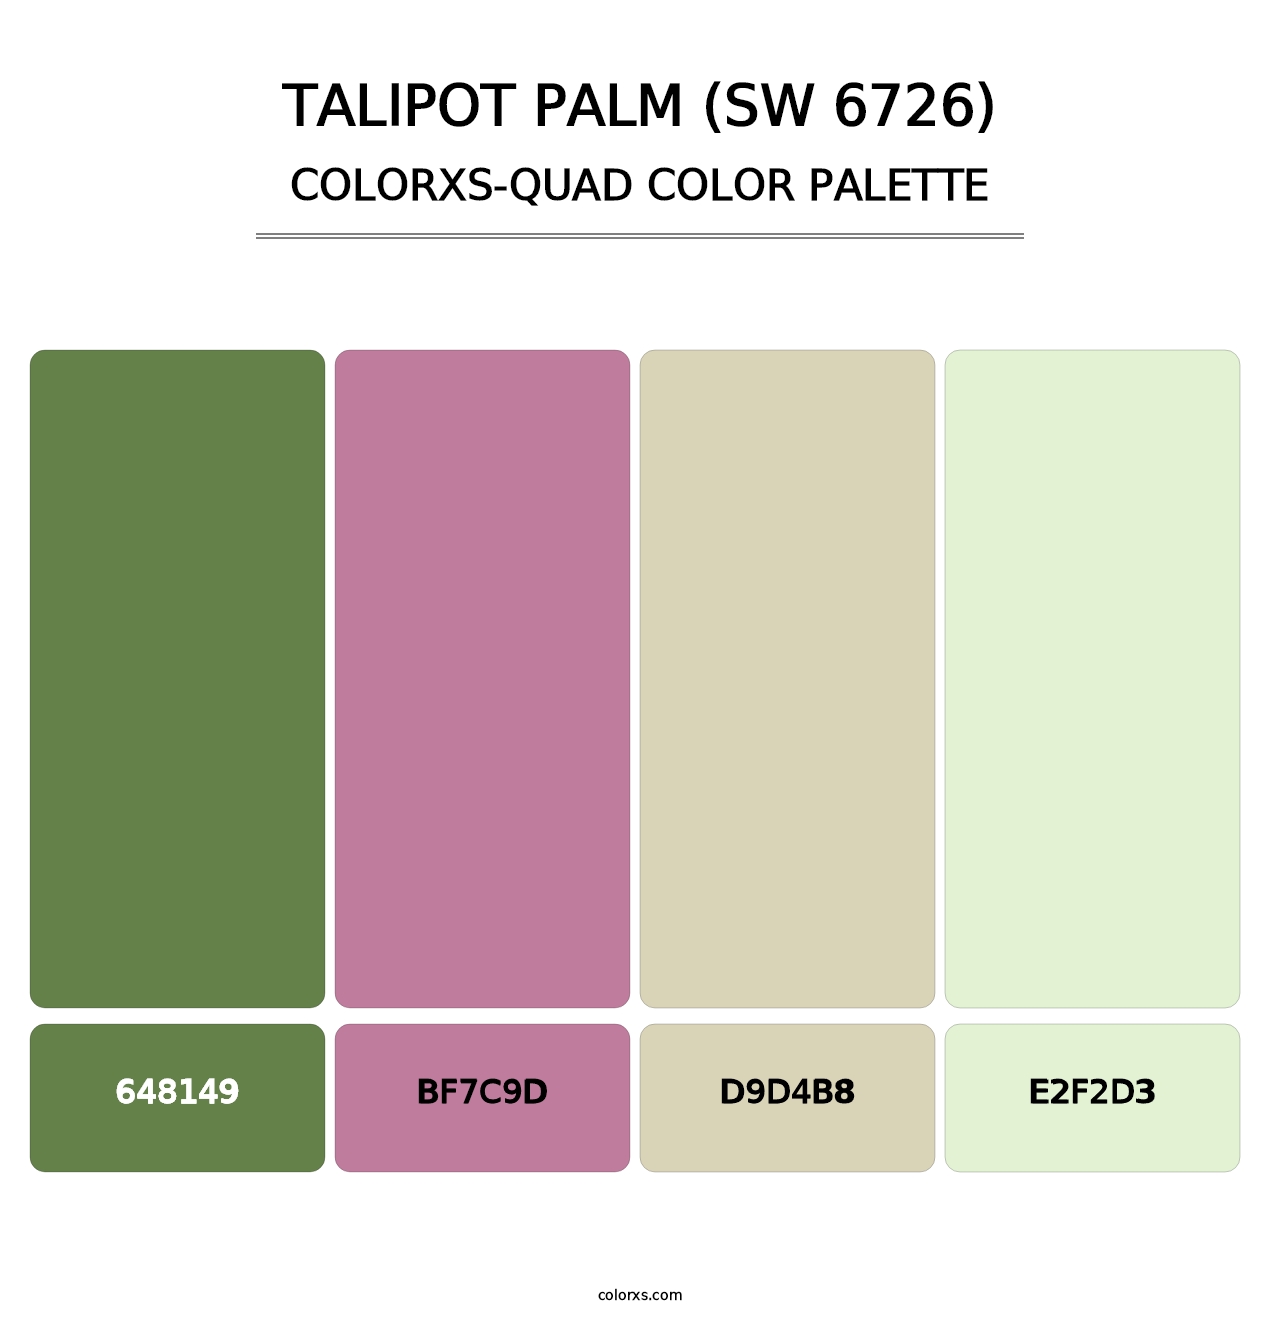 Talipot Palm (SW 6726) - Colorxs Quad Palette